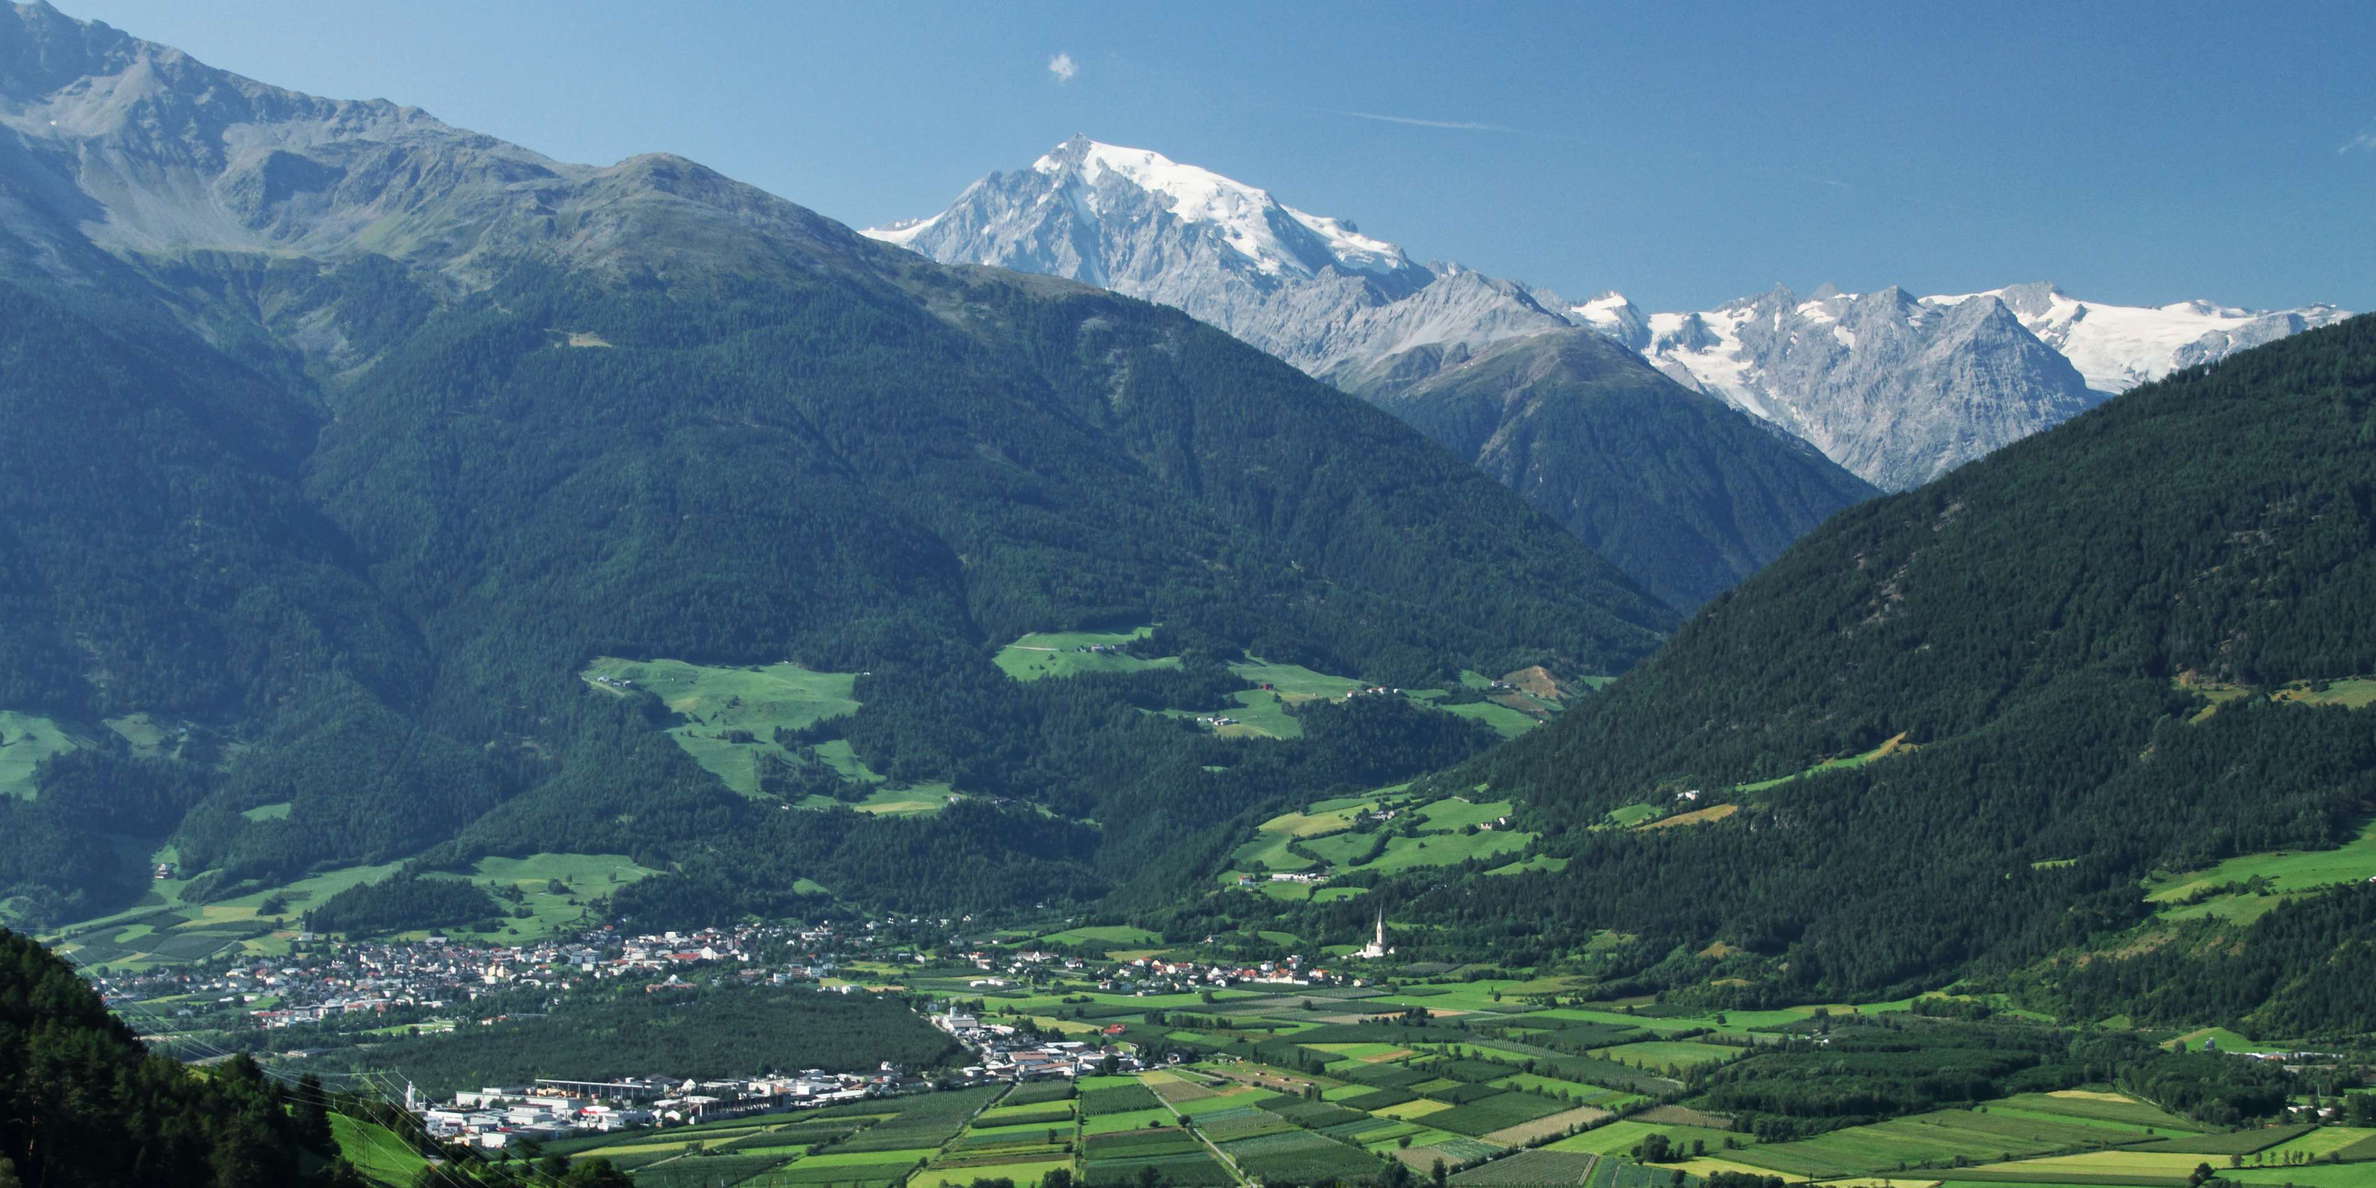 Vinschgau Valley with Ortler